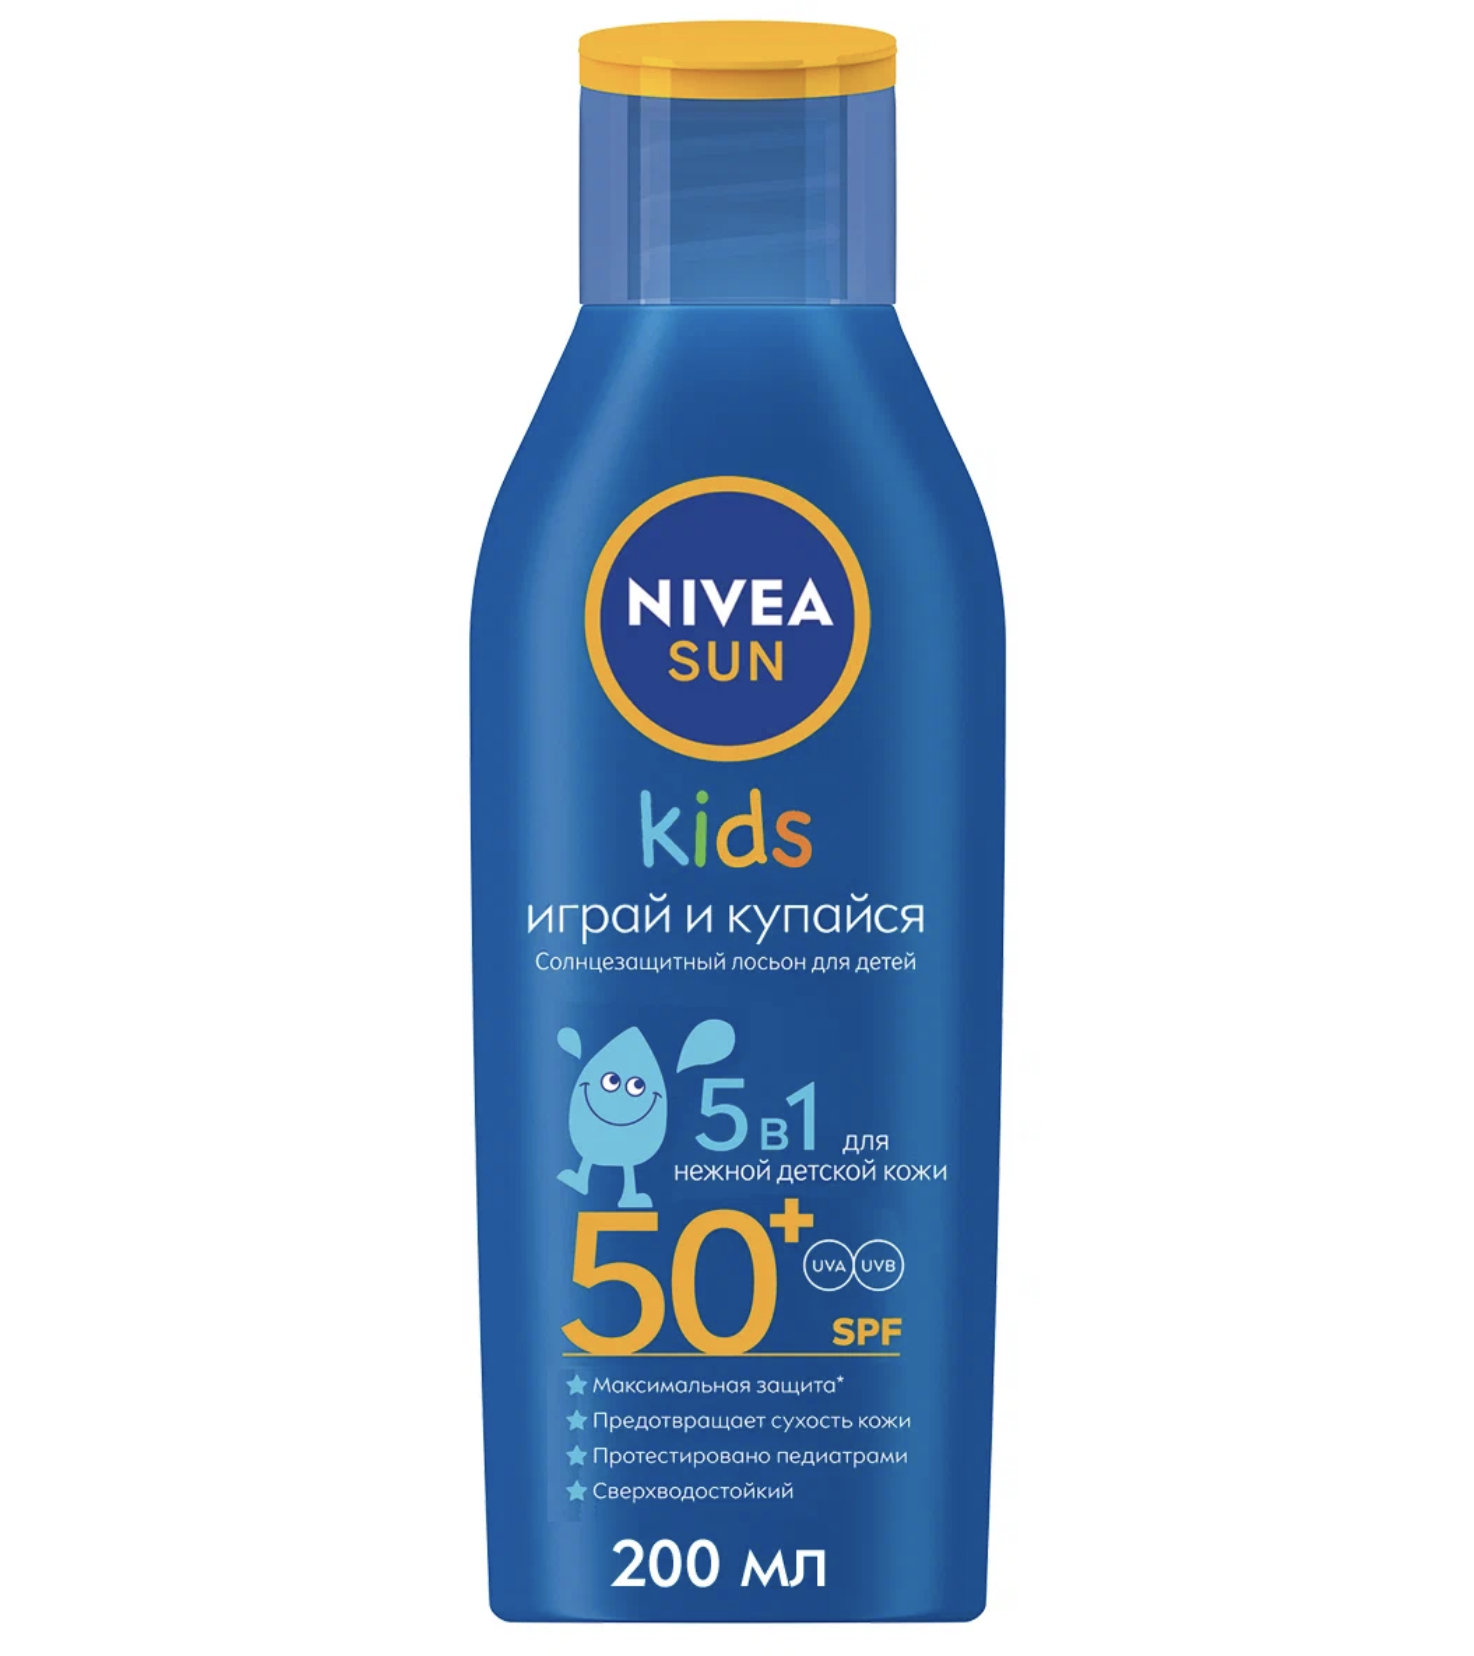   / Nivea Sun -      Kids 51 50+SPF    200 